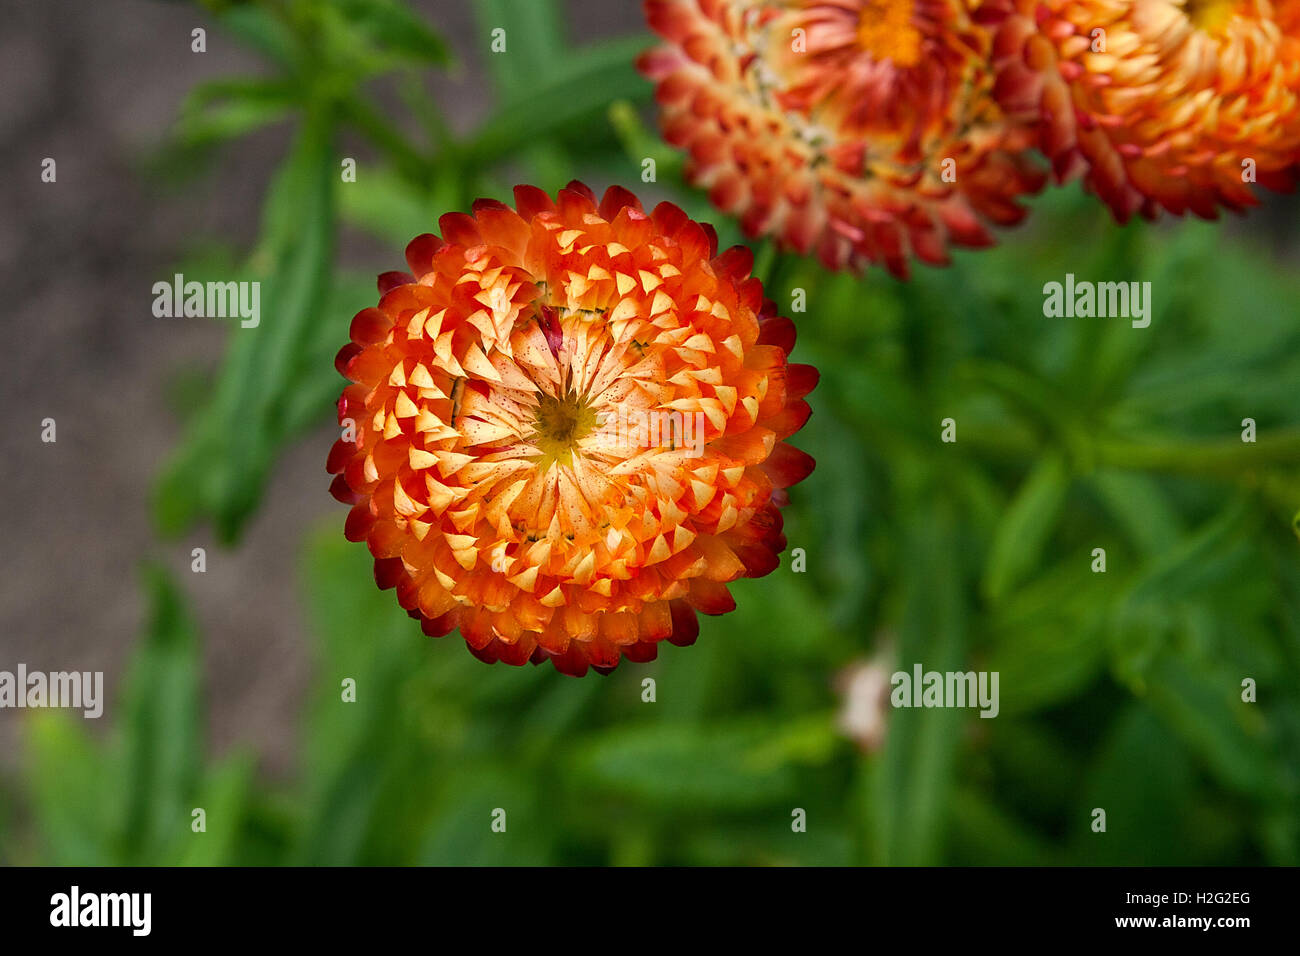 Helichrysum or Straw flower in outdoor garden. Straw flowers, scientific name is Helichrysum bracteatum. Stock Photo